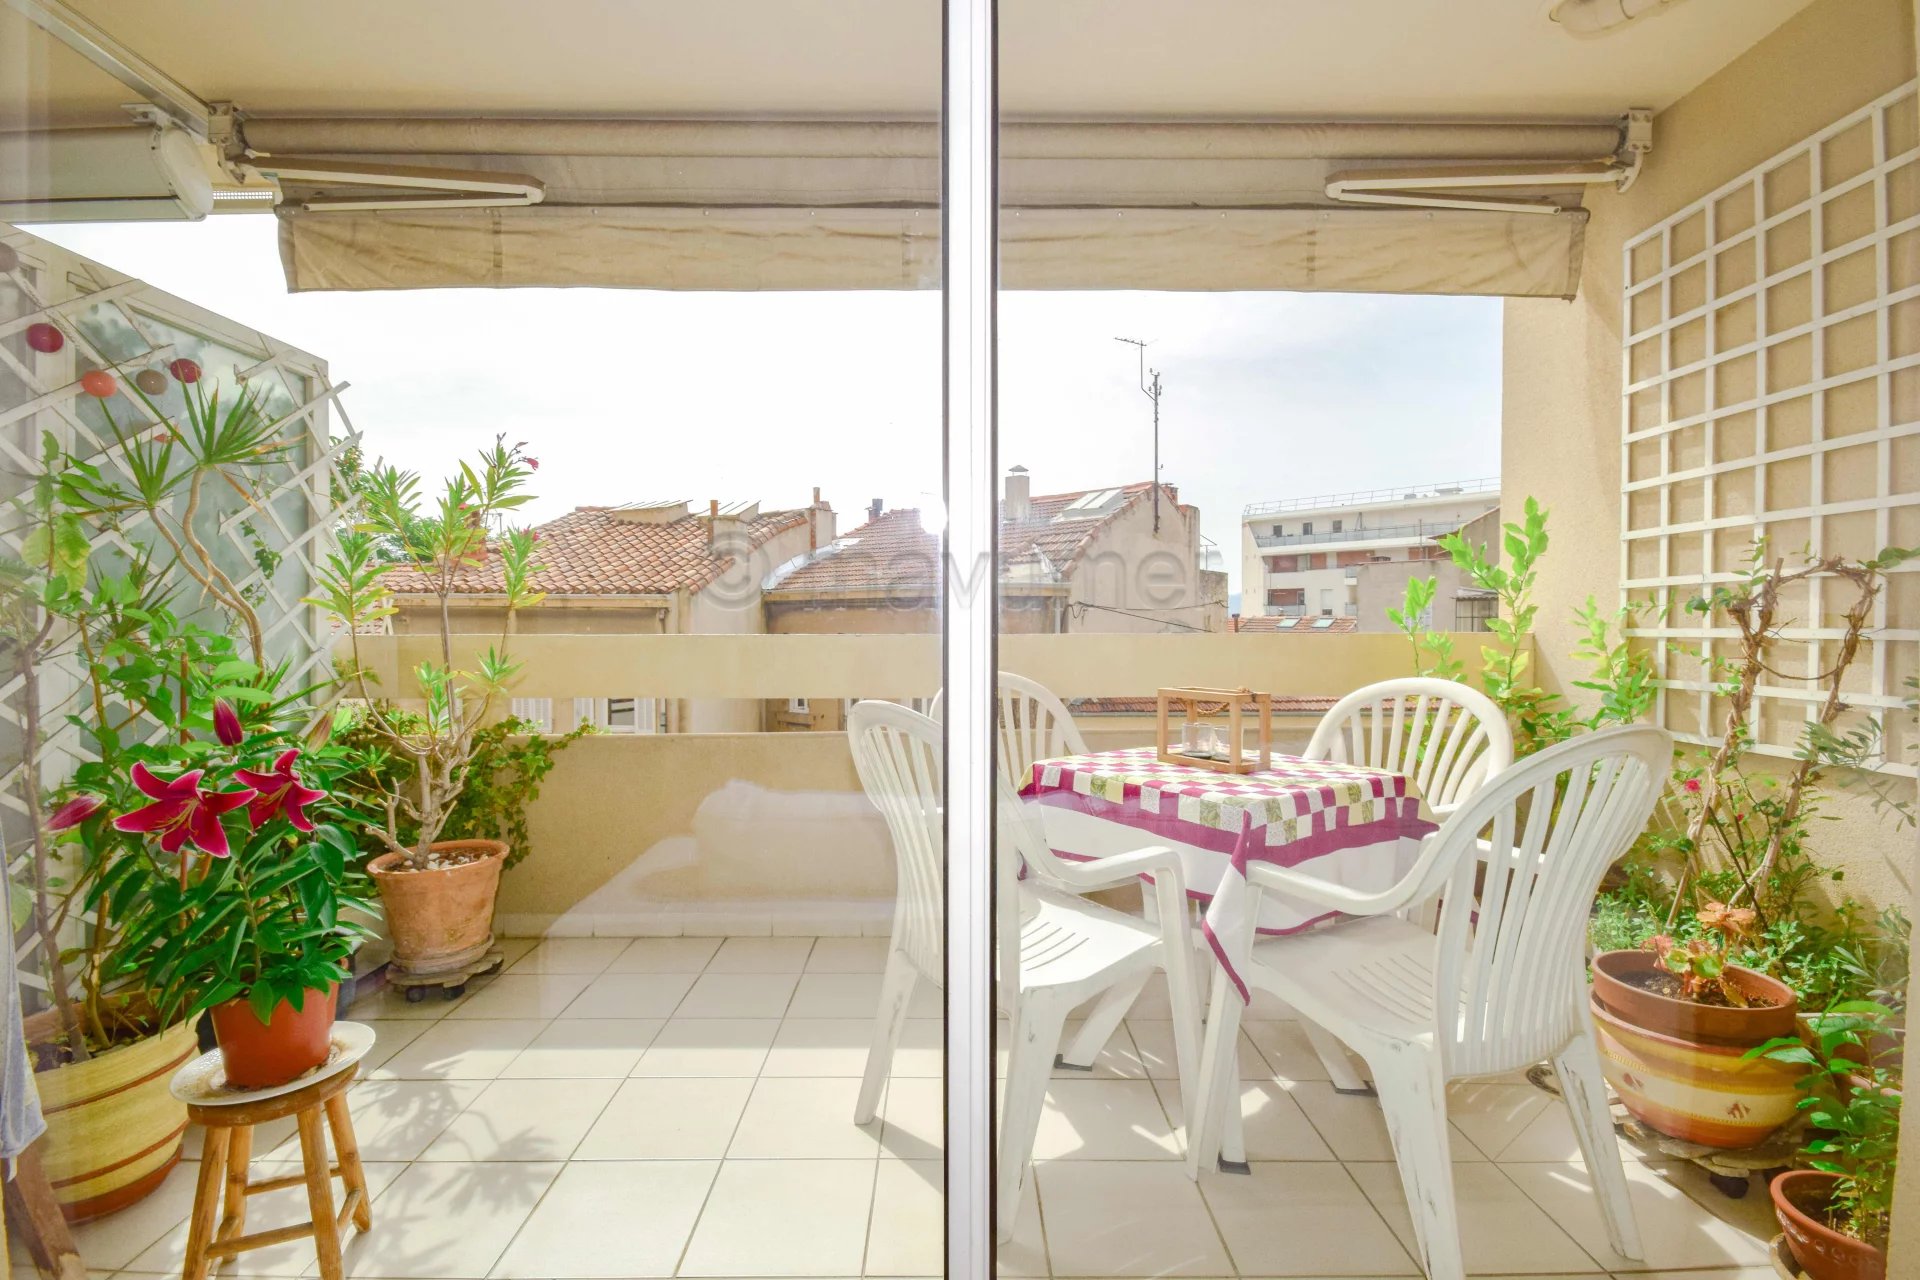 Sale Apartment - Marseille 4ème Les Chartreux